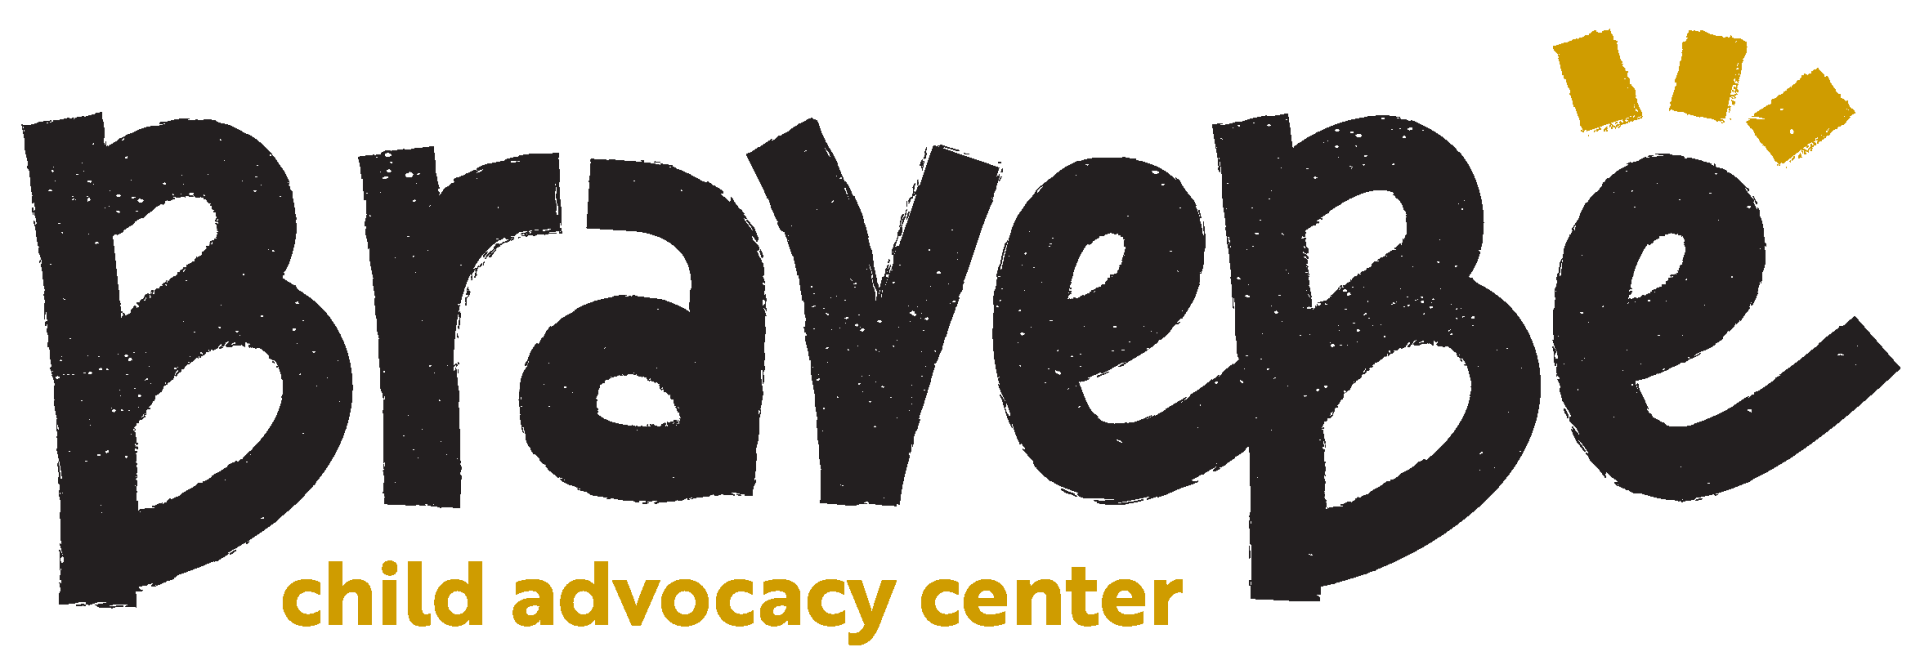 Child Advocacy Center Brave Be logo